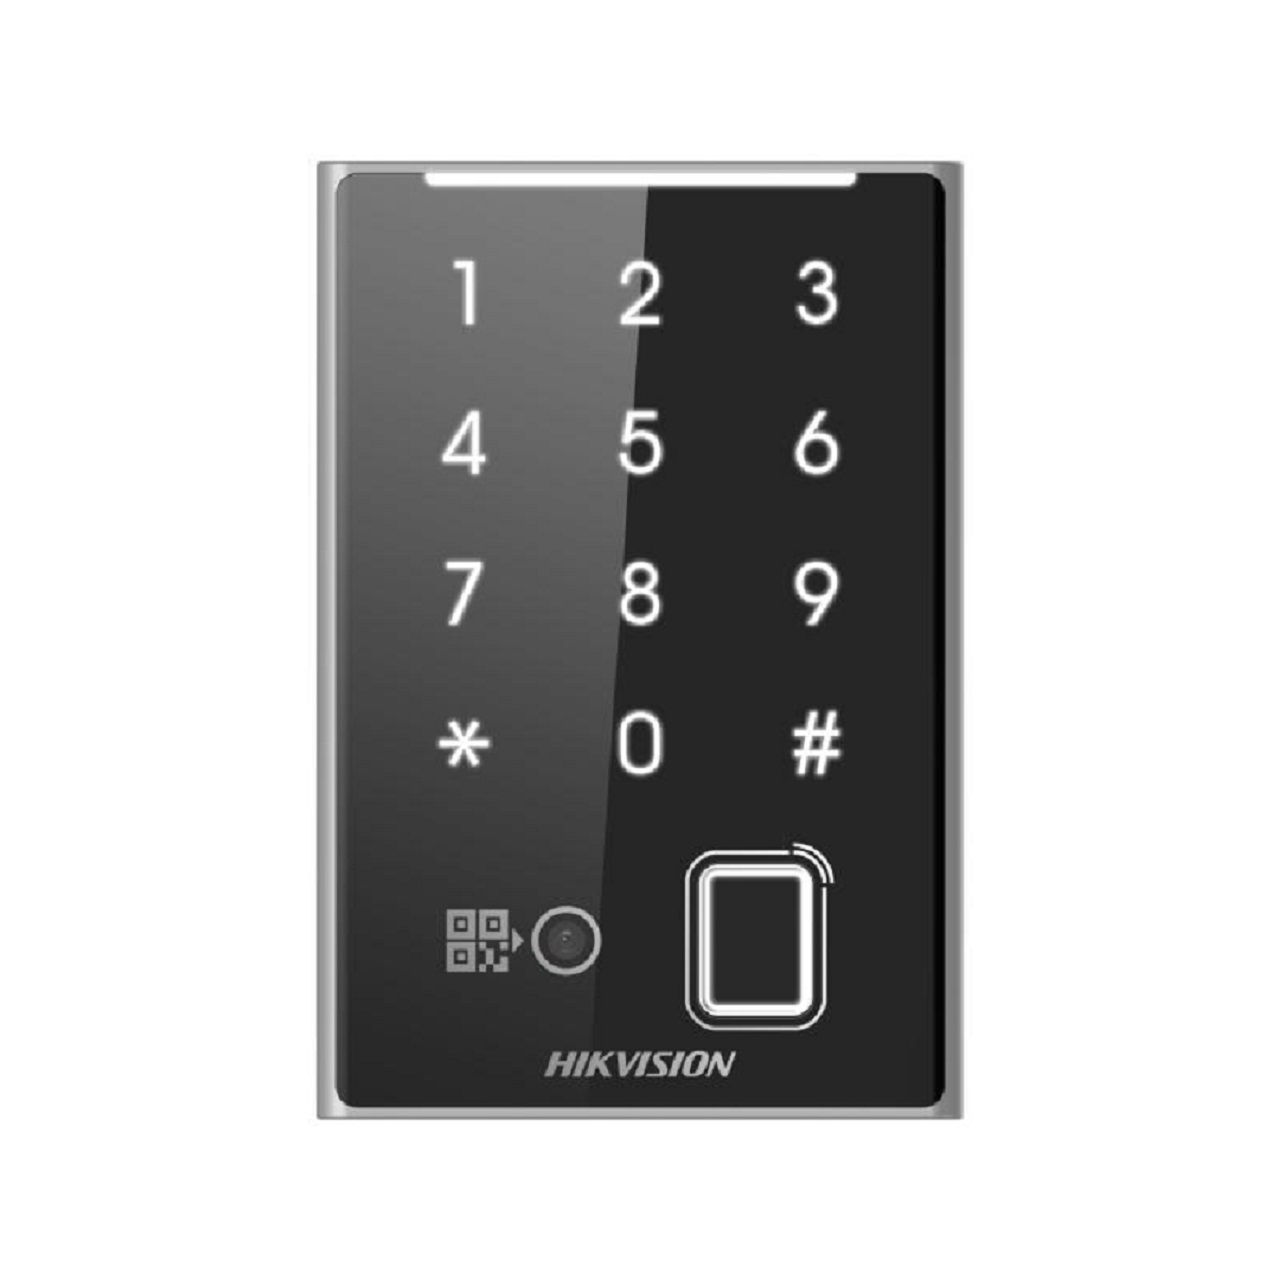 Hikvision DS-K1109DKFB-QR Kartenleser Authentifizierung per Karte, Passwort, Fingerabdruck und QR-Code